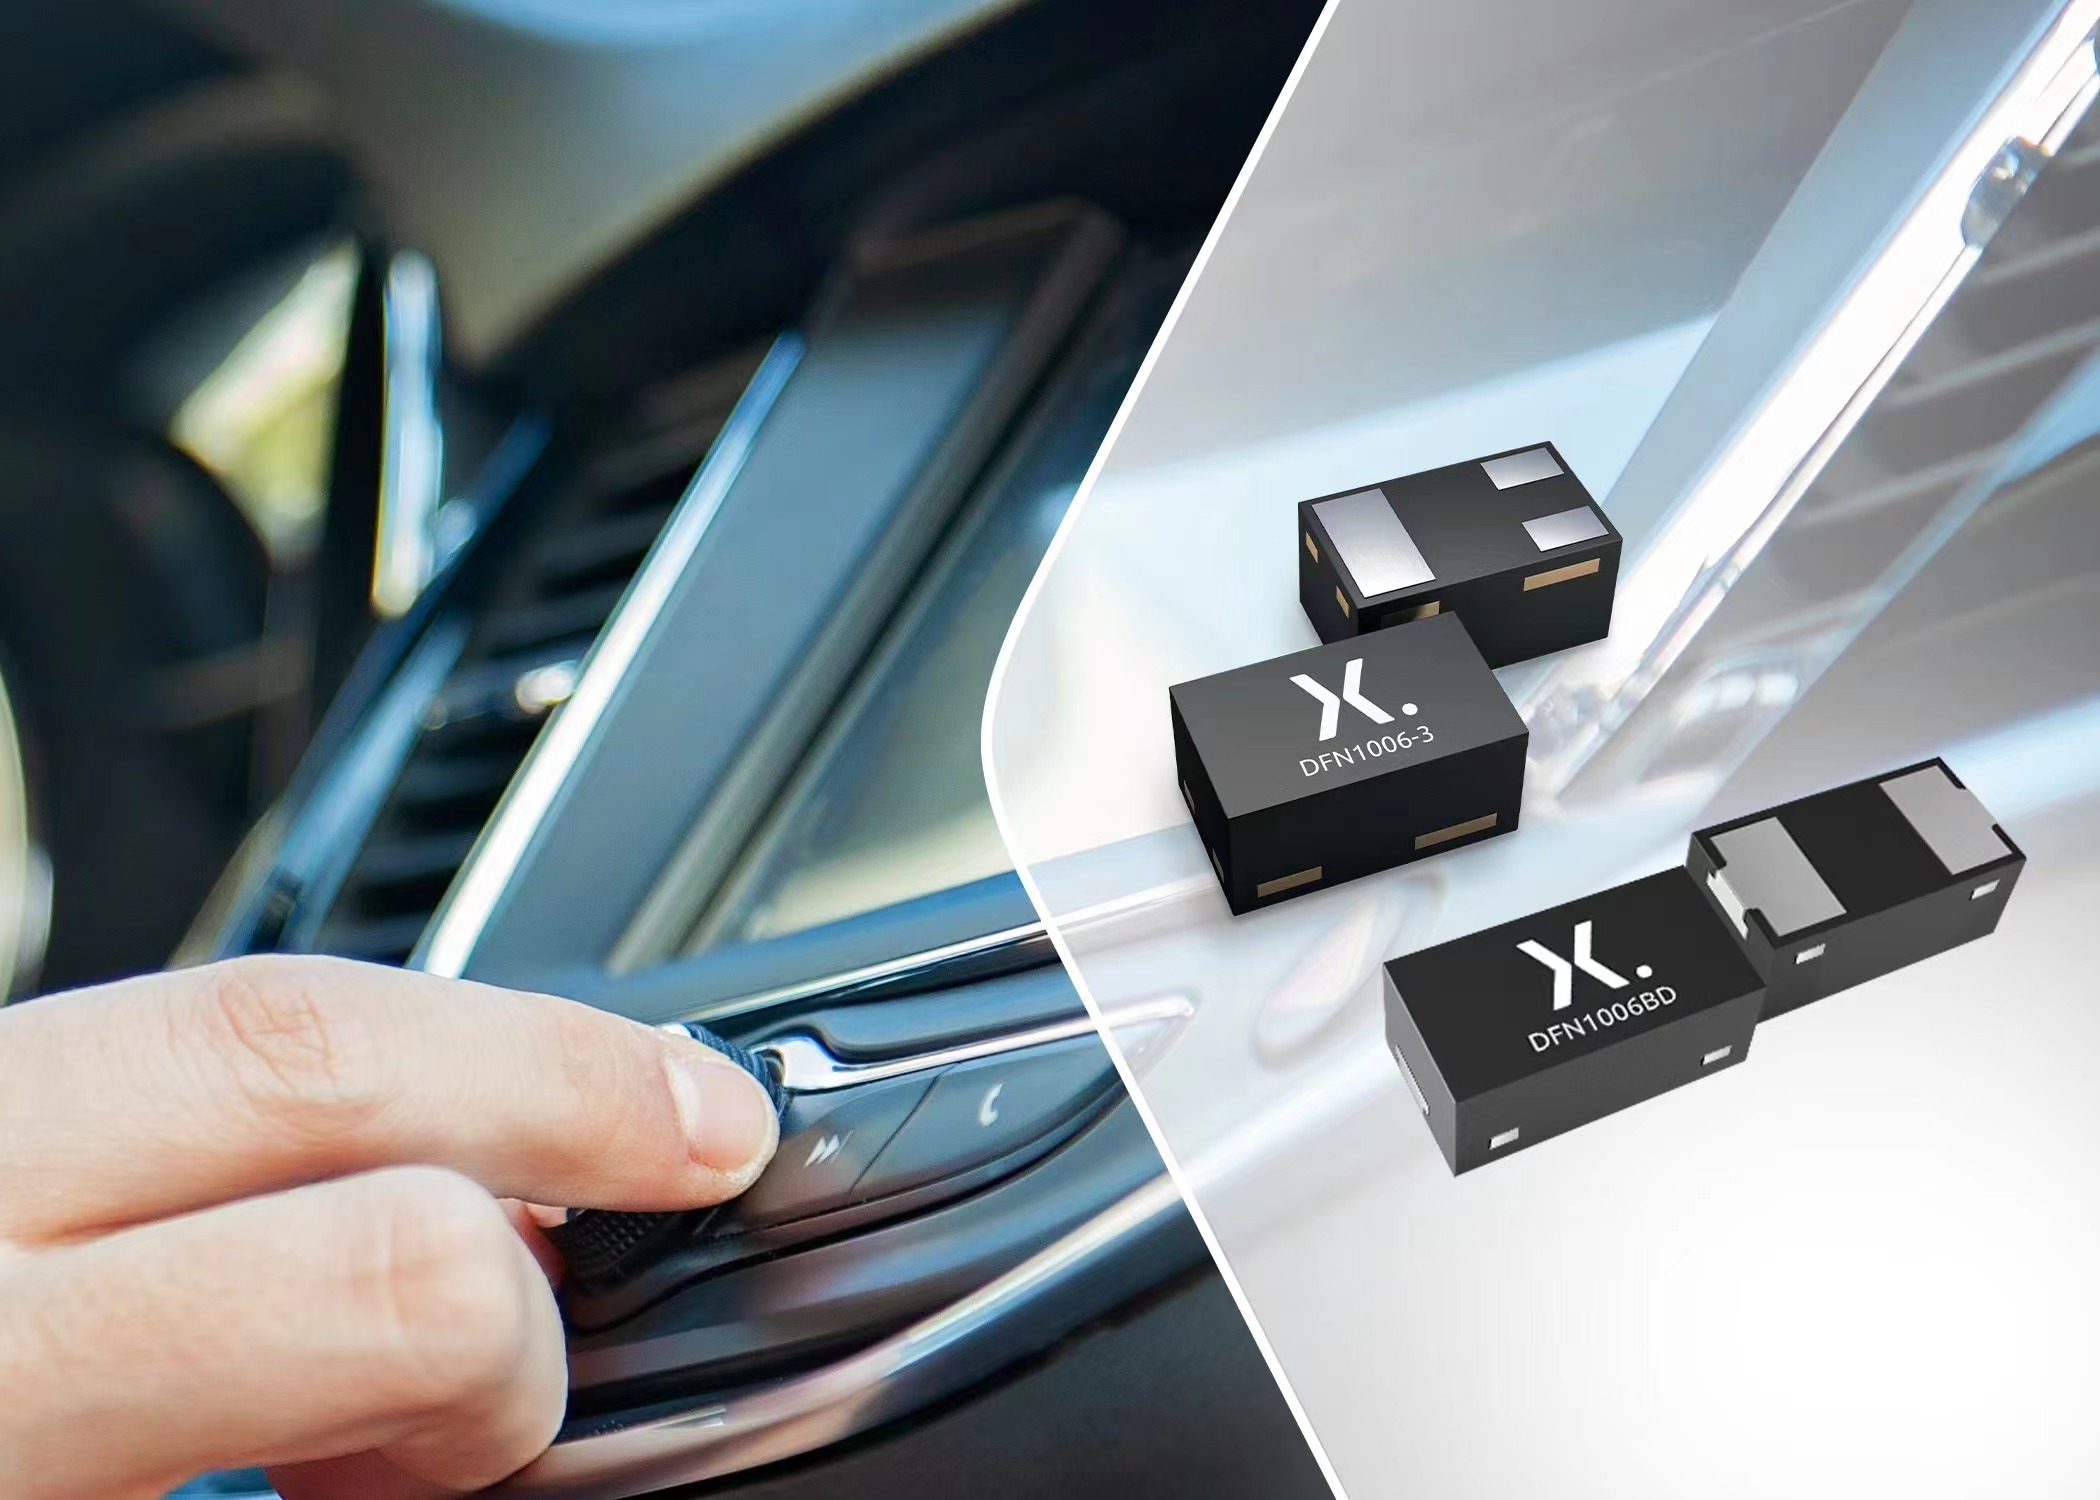   Nexperia超低电容ESD保护二极管保护汽车数据接口